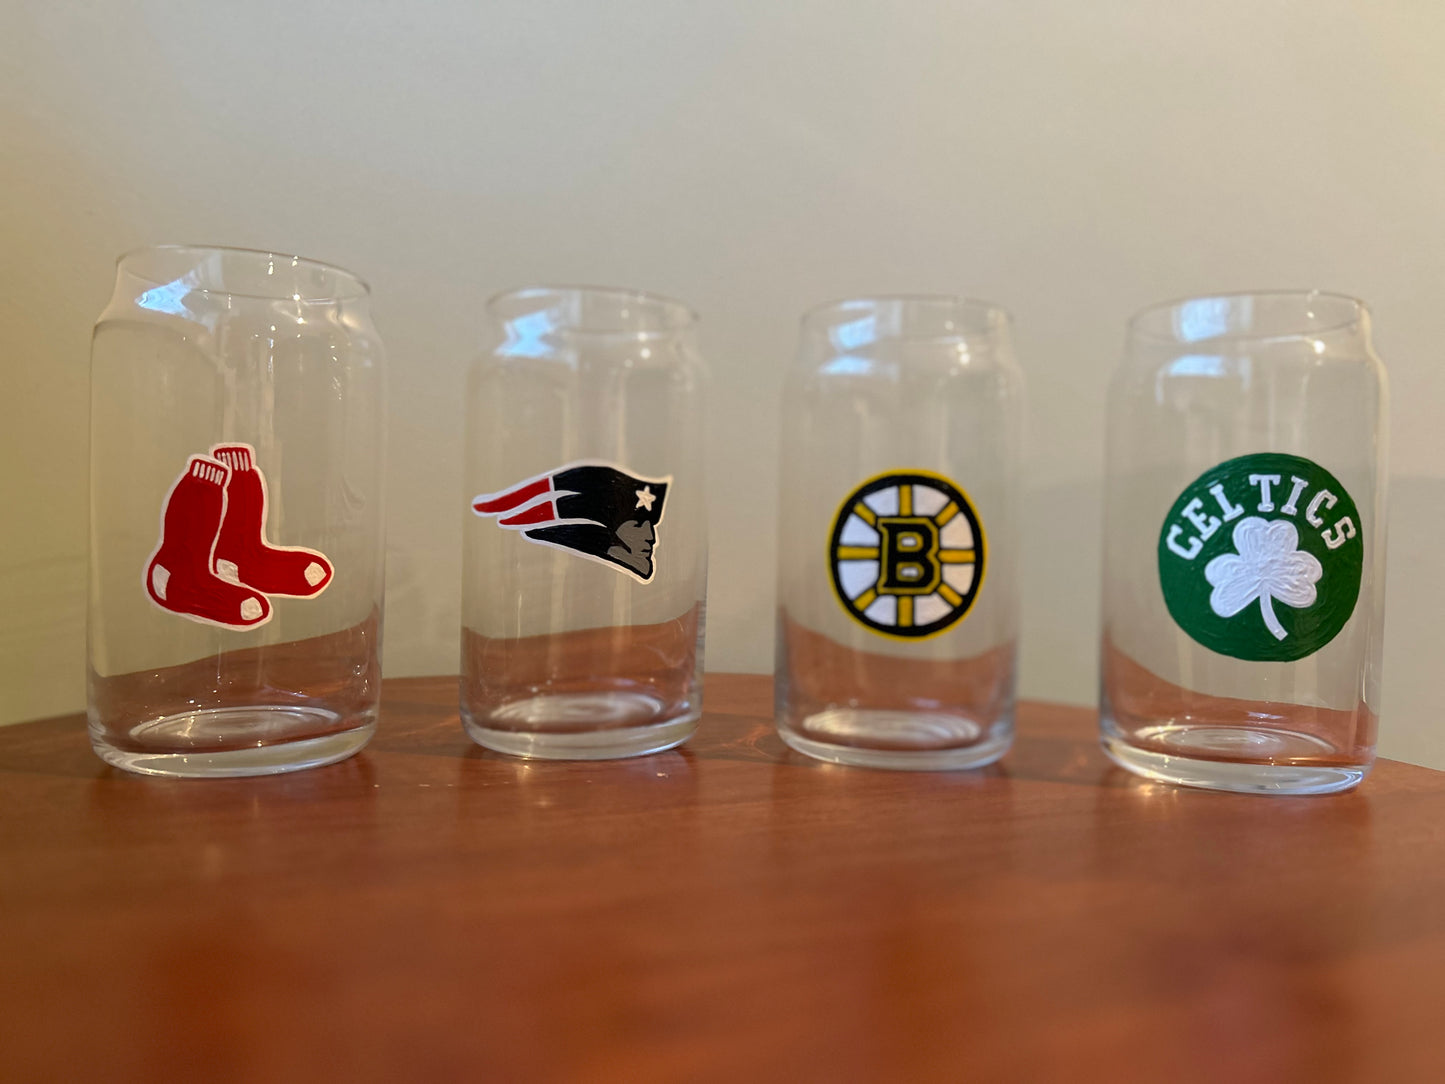 Boston Sports Glasses